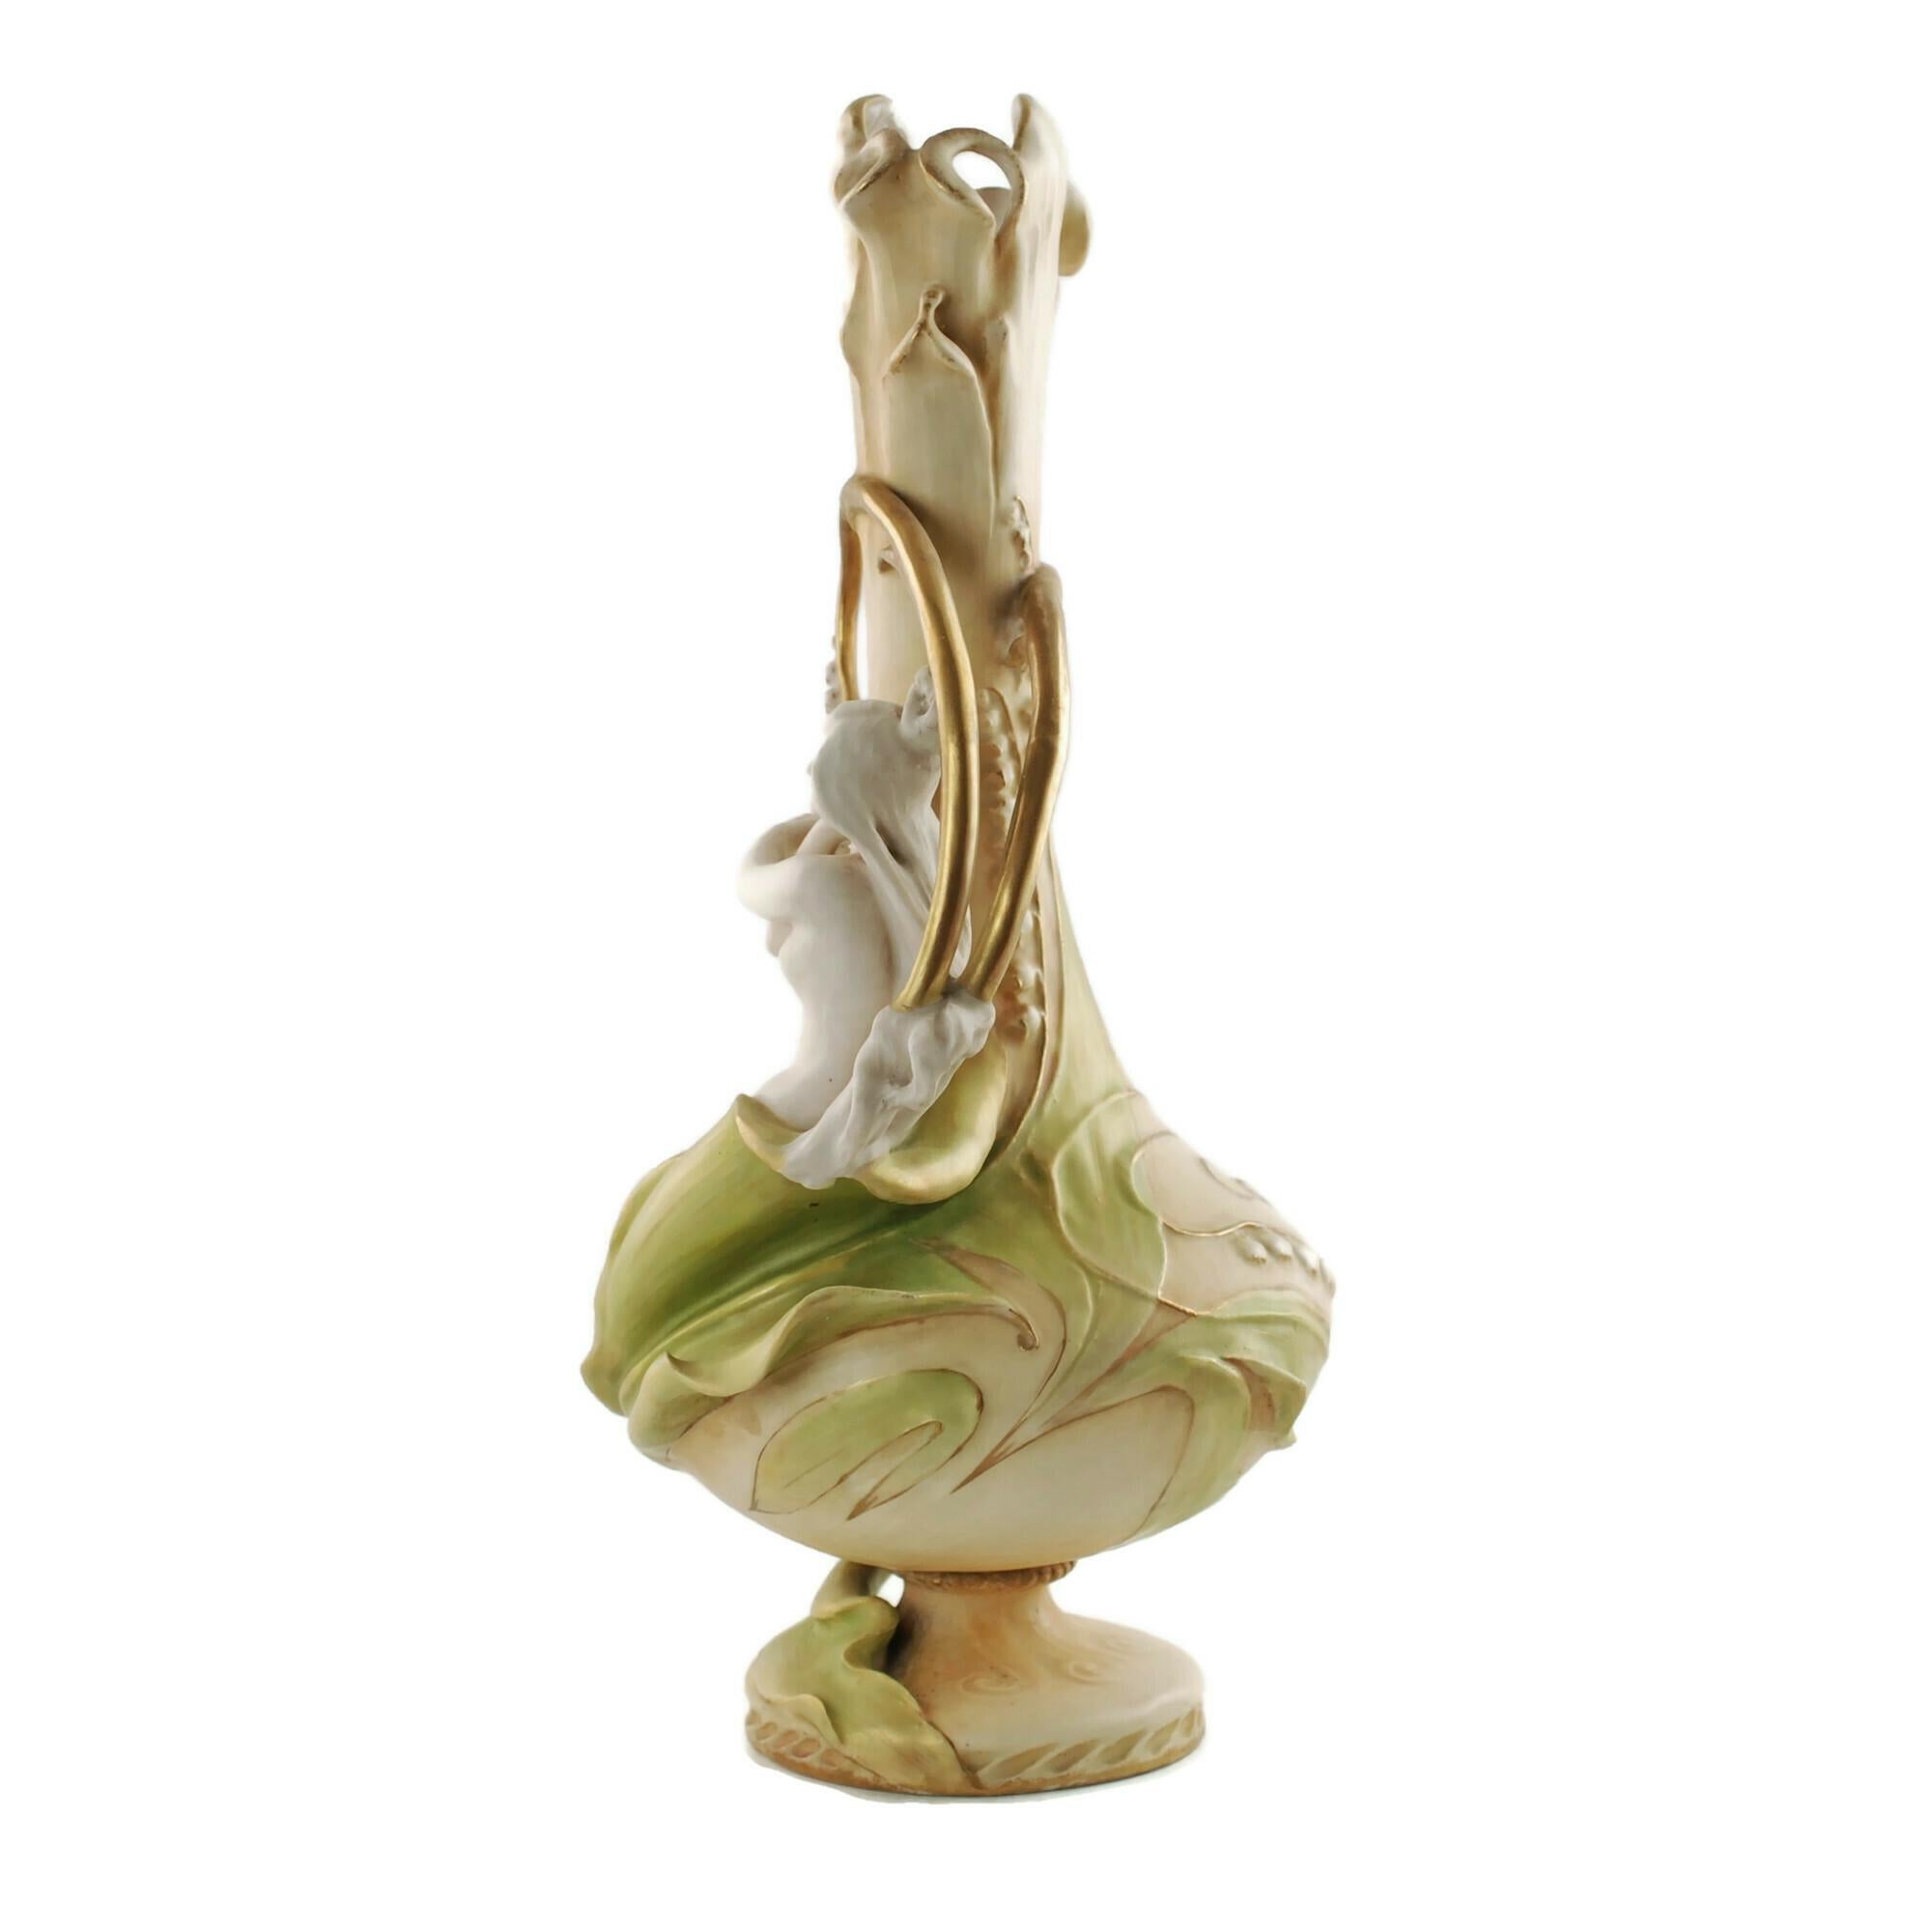 Ce vase en porcelaine de la fin du XIXe siècle a été conçu par Eduard Stellmacher pour Riessner, Stellmacher & Kessel Amphora de Turn-Teplitz, Bohemia. La pièce a une forme classique Art nouveau et représente une nymphe de dimension partiellement